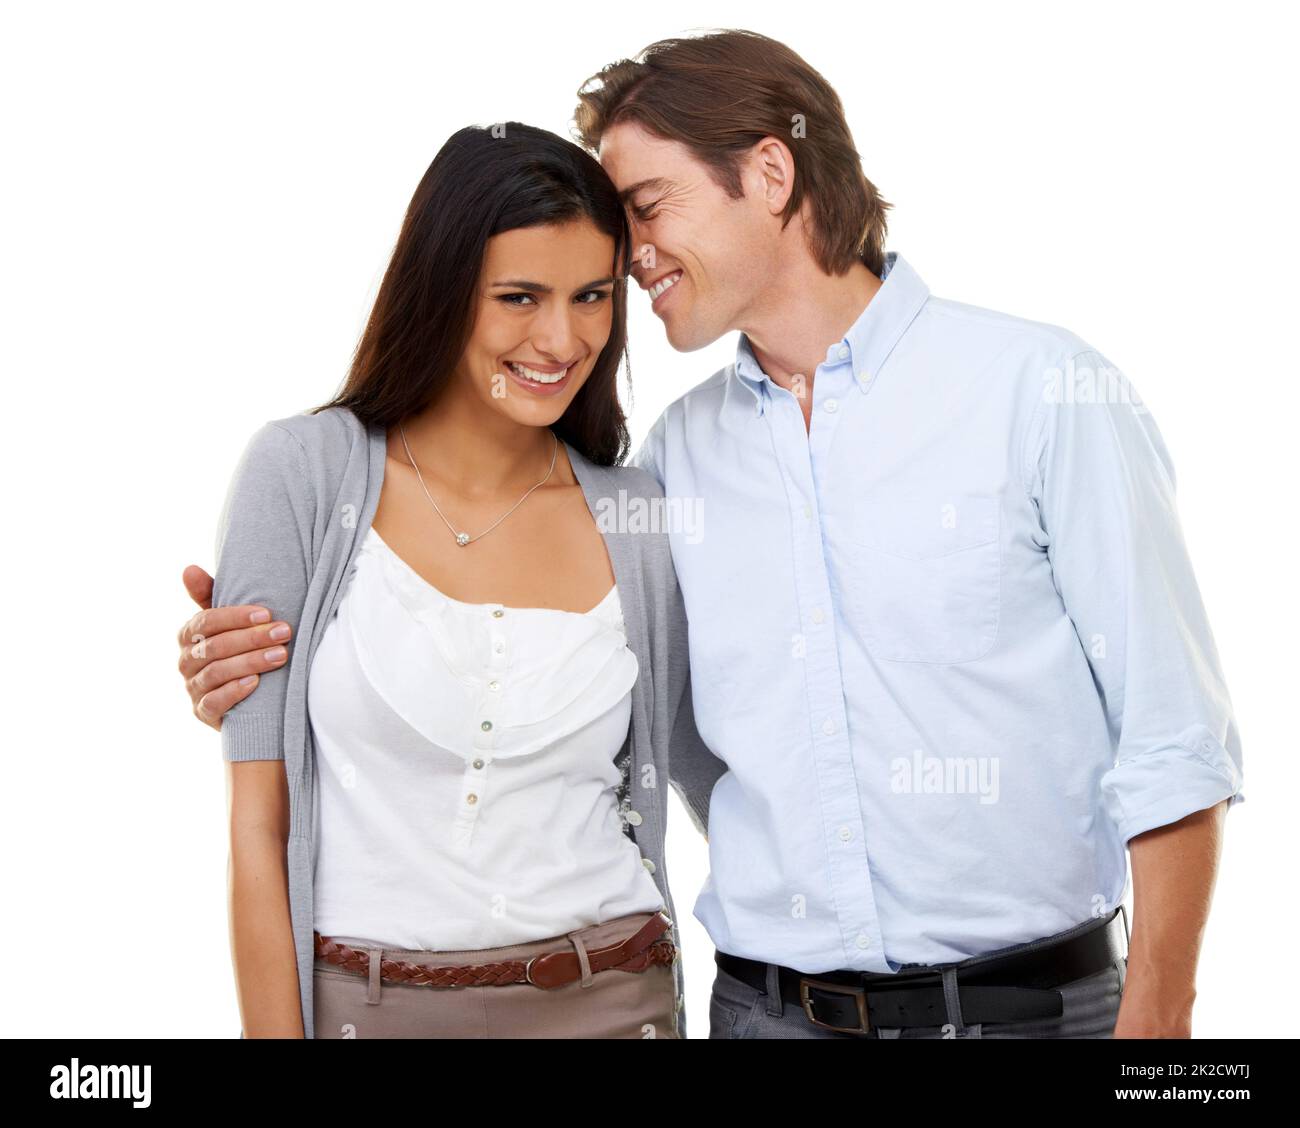 HES pazzo di lei. Ritratto di una coppia multietnica isolato su sfondo bianco. Foto Stock